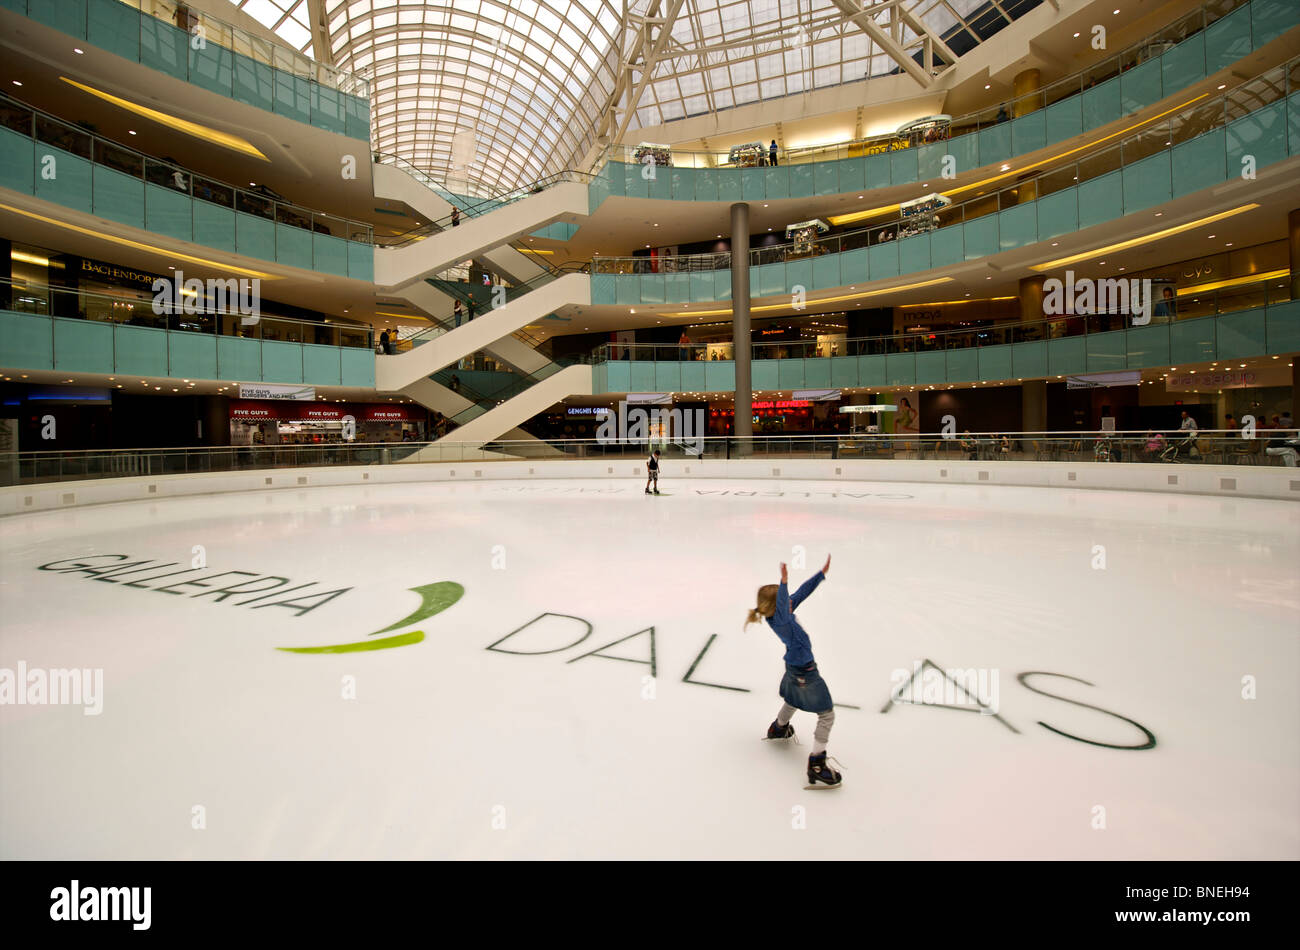 Ragazza il pattinaggio su ghiaccio-anello di pattinaggio presso la galleria shopping mall a Dallas, Texas, Stati Uniti d'America Foto Stock